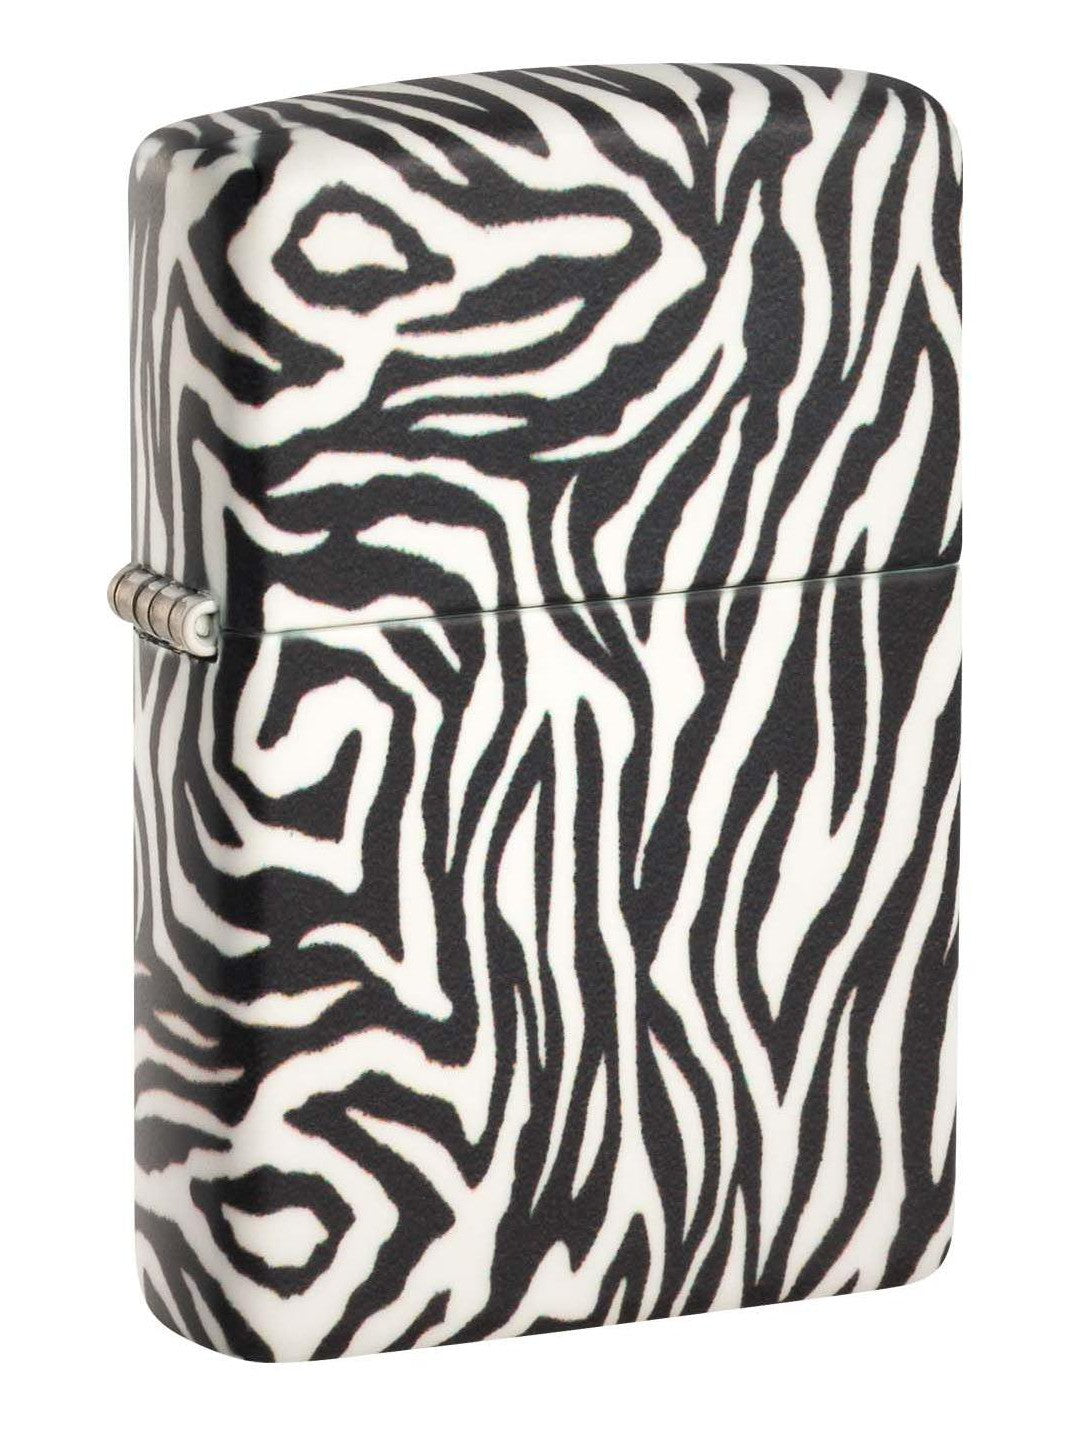 Zippo Lighter: Zebra Print - 540 Color 48223